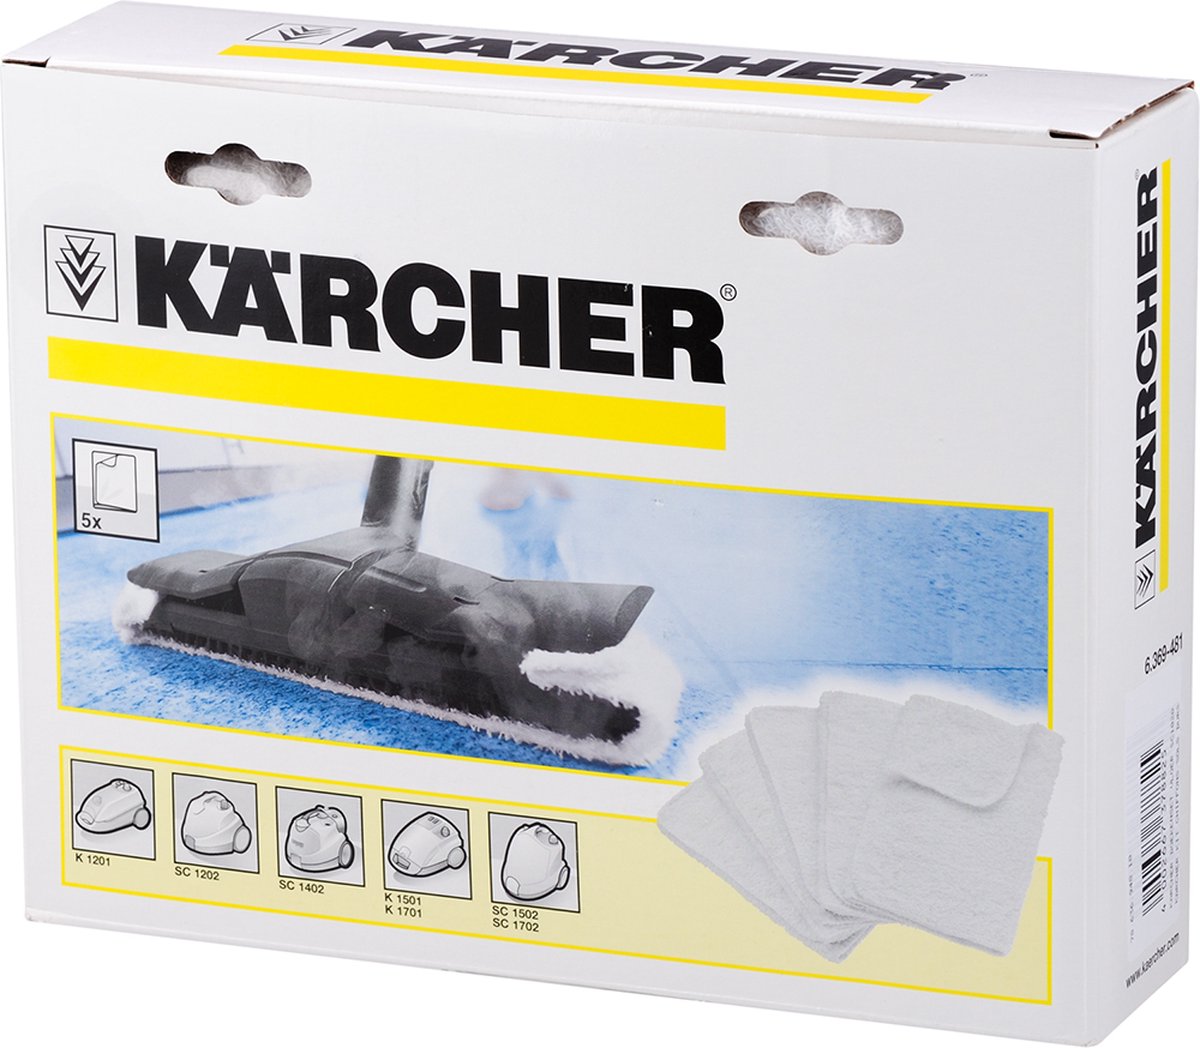 Karcher Katoenen Vloerdoeken groot (5 st) | bol.com